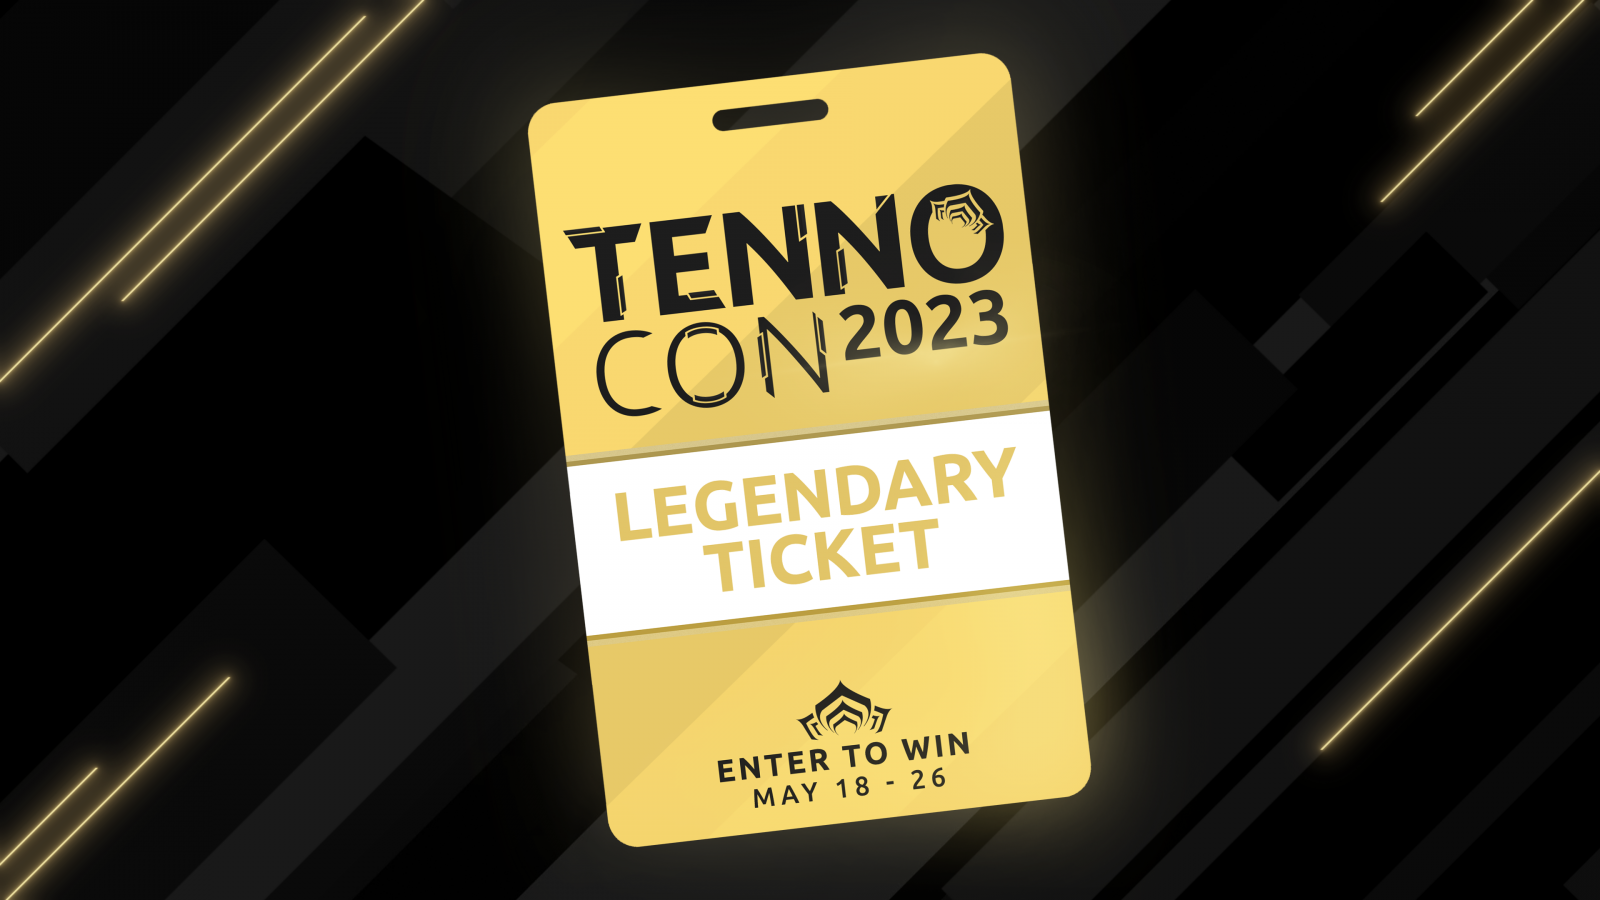 TennoCon 2023 Legendary Ticket Giveaway